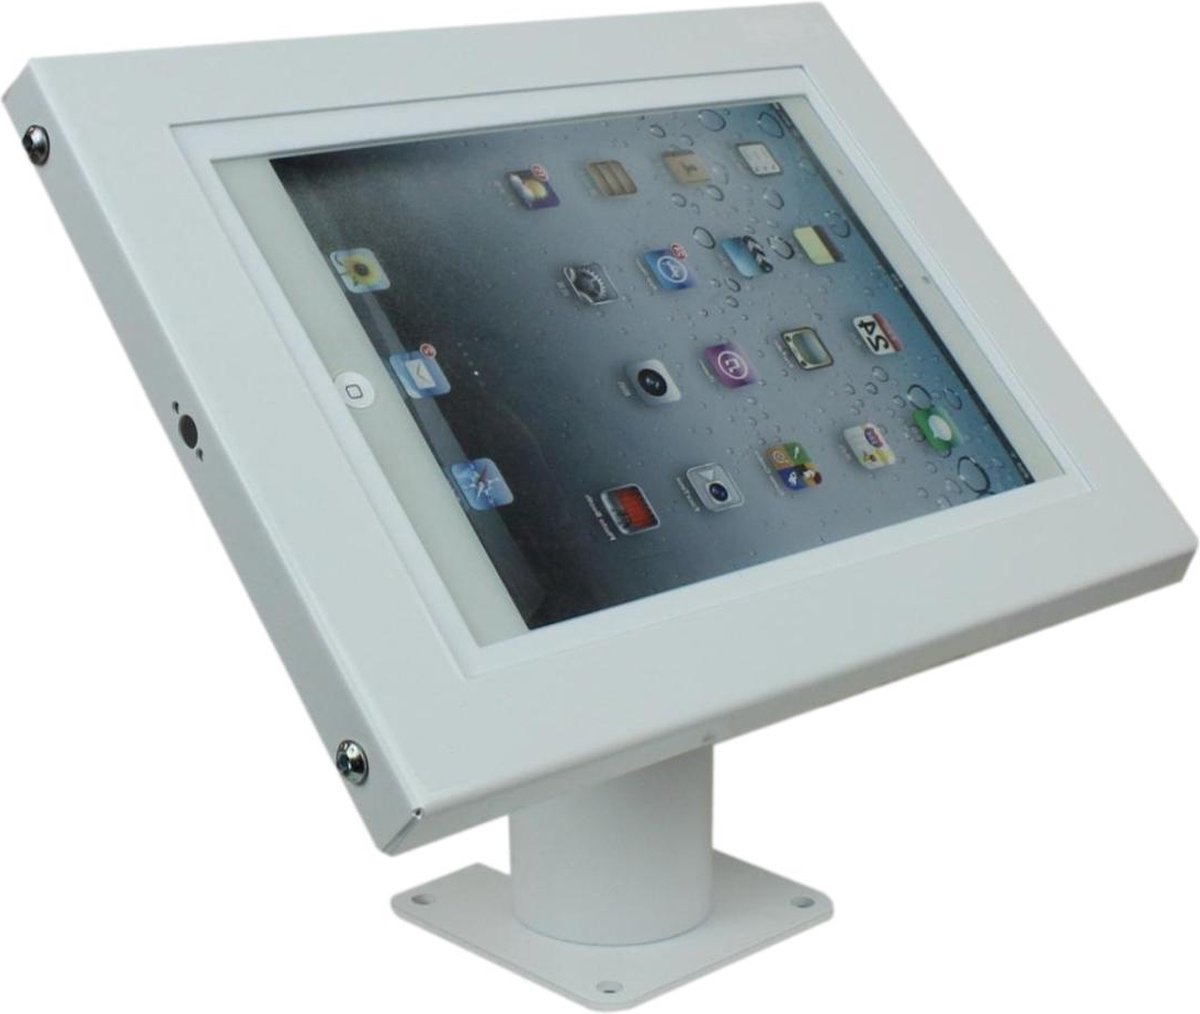 Tablethouder - tabletstandaard - standaard tablet - ipad houder - tablet tafelstandaard - houder voor tablet - voor tablets tussen 12-13 inch - wit